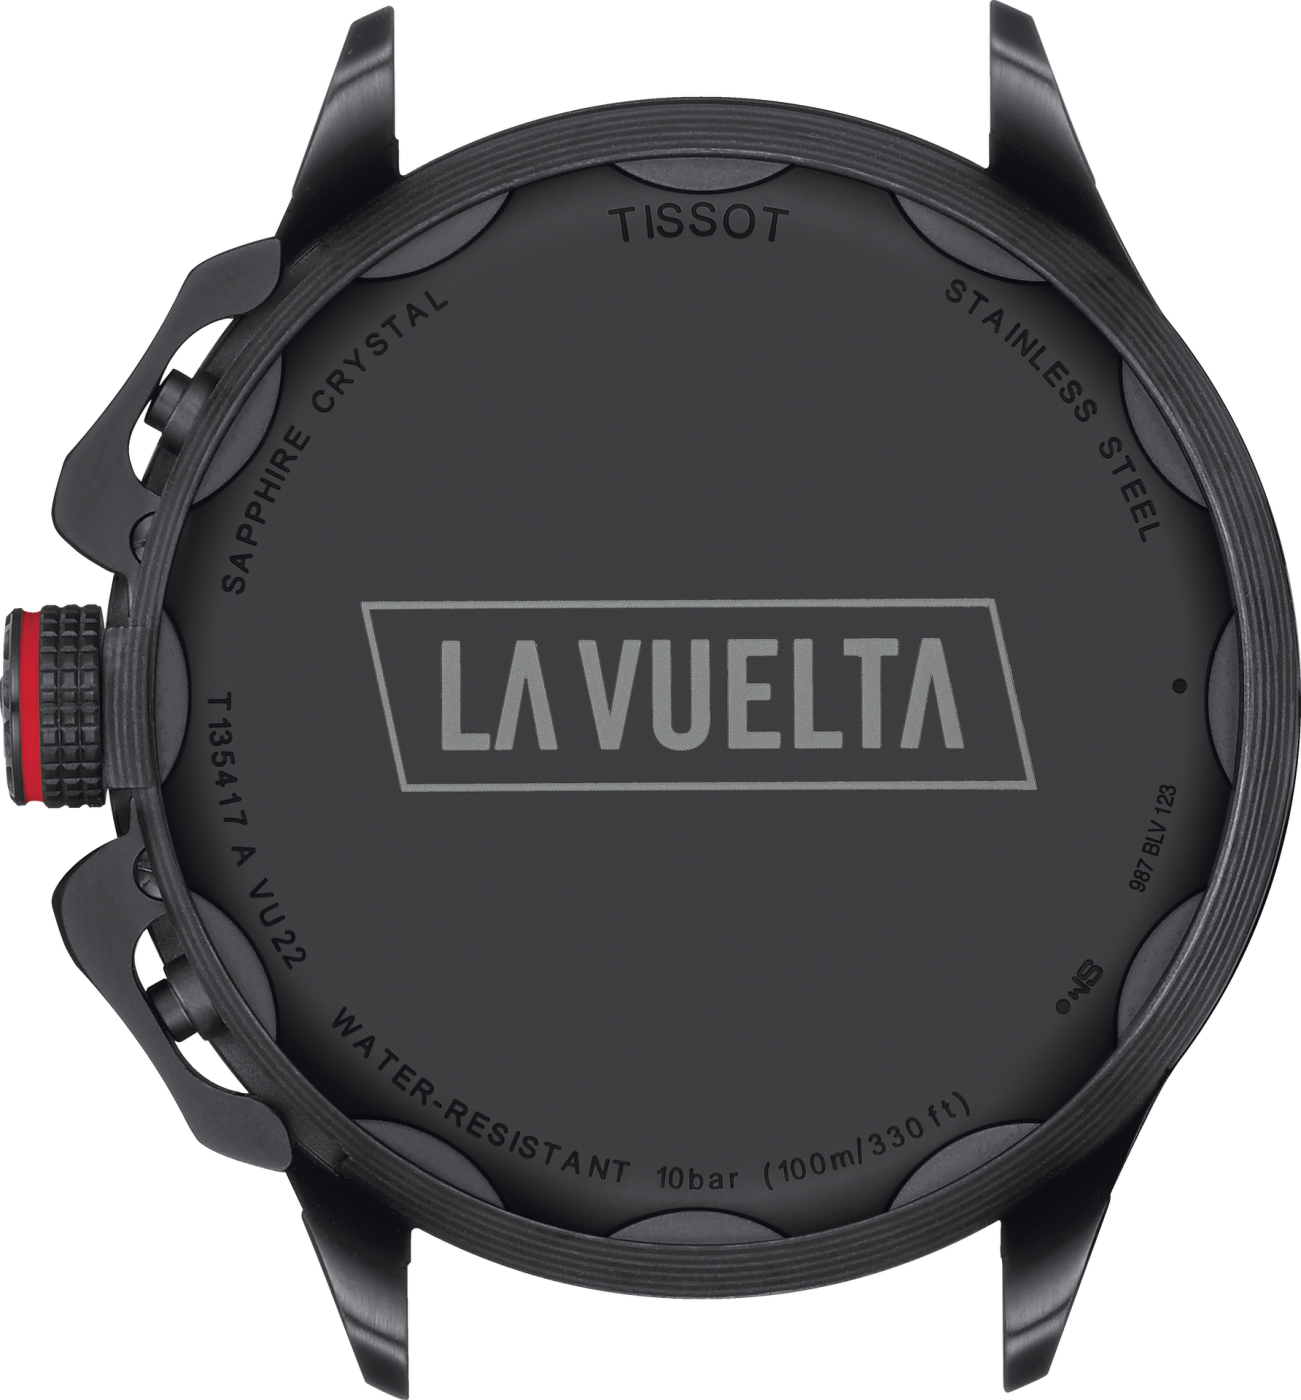 Die neue Tissot-Uhr im Vuelta a España Design